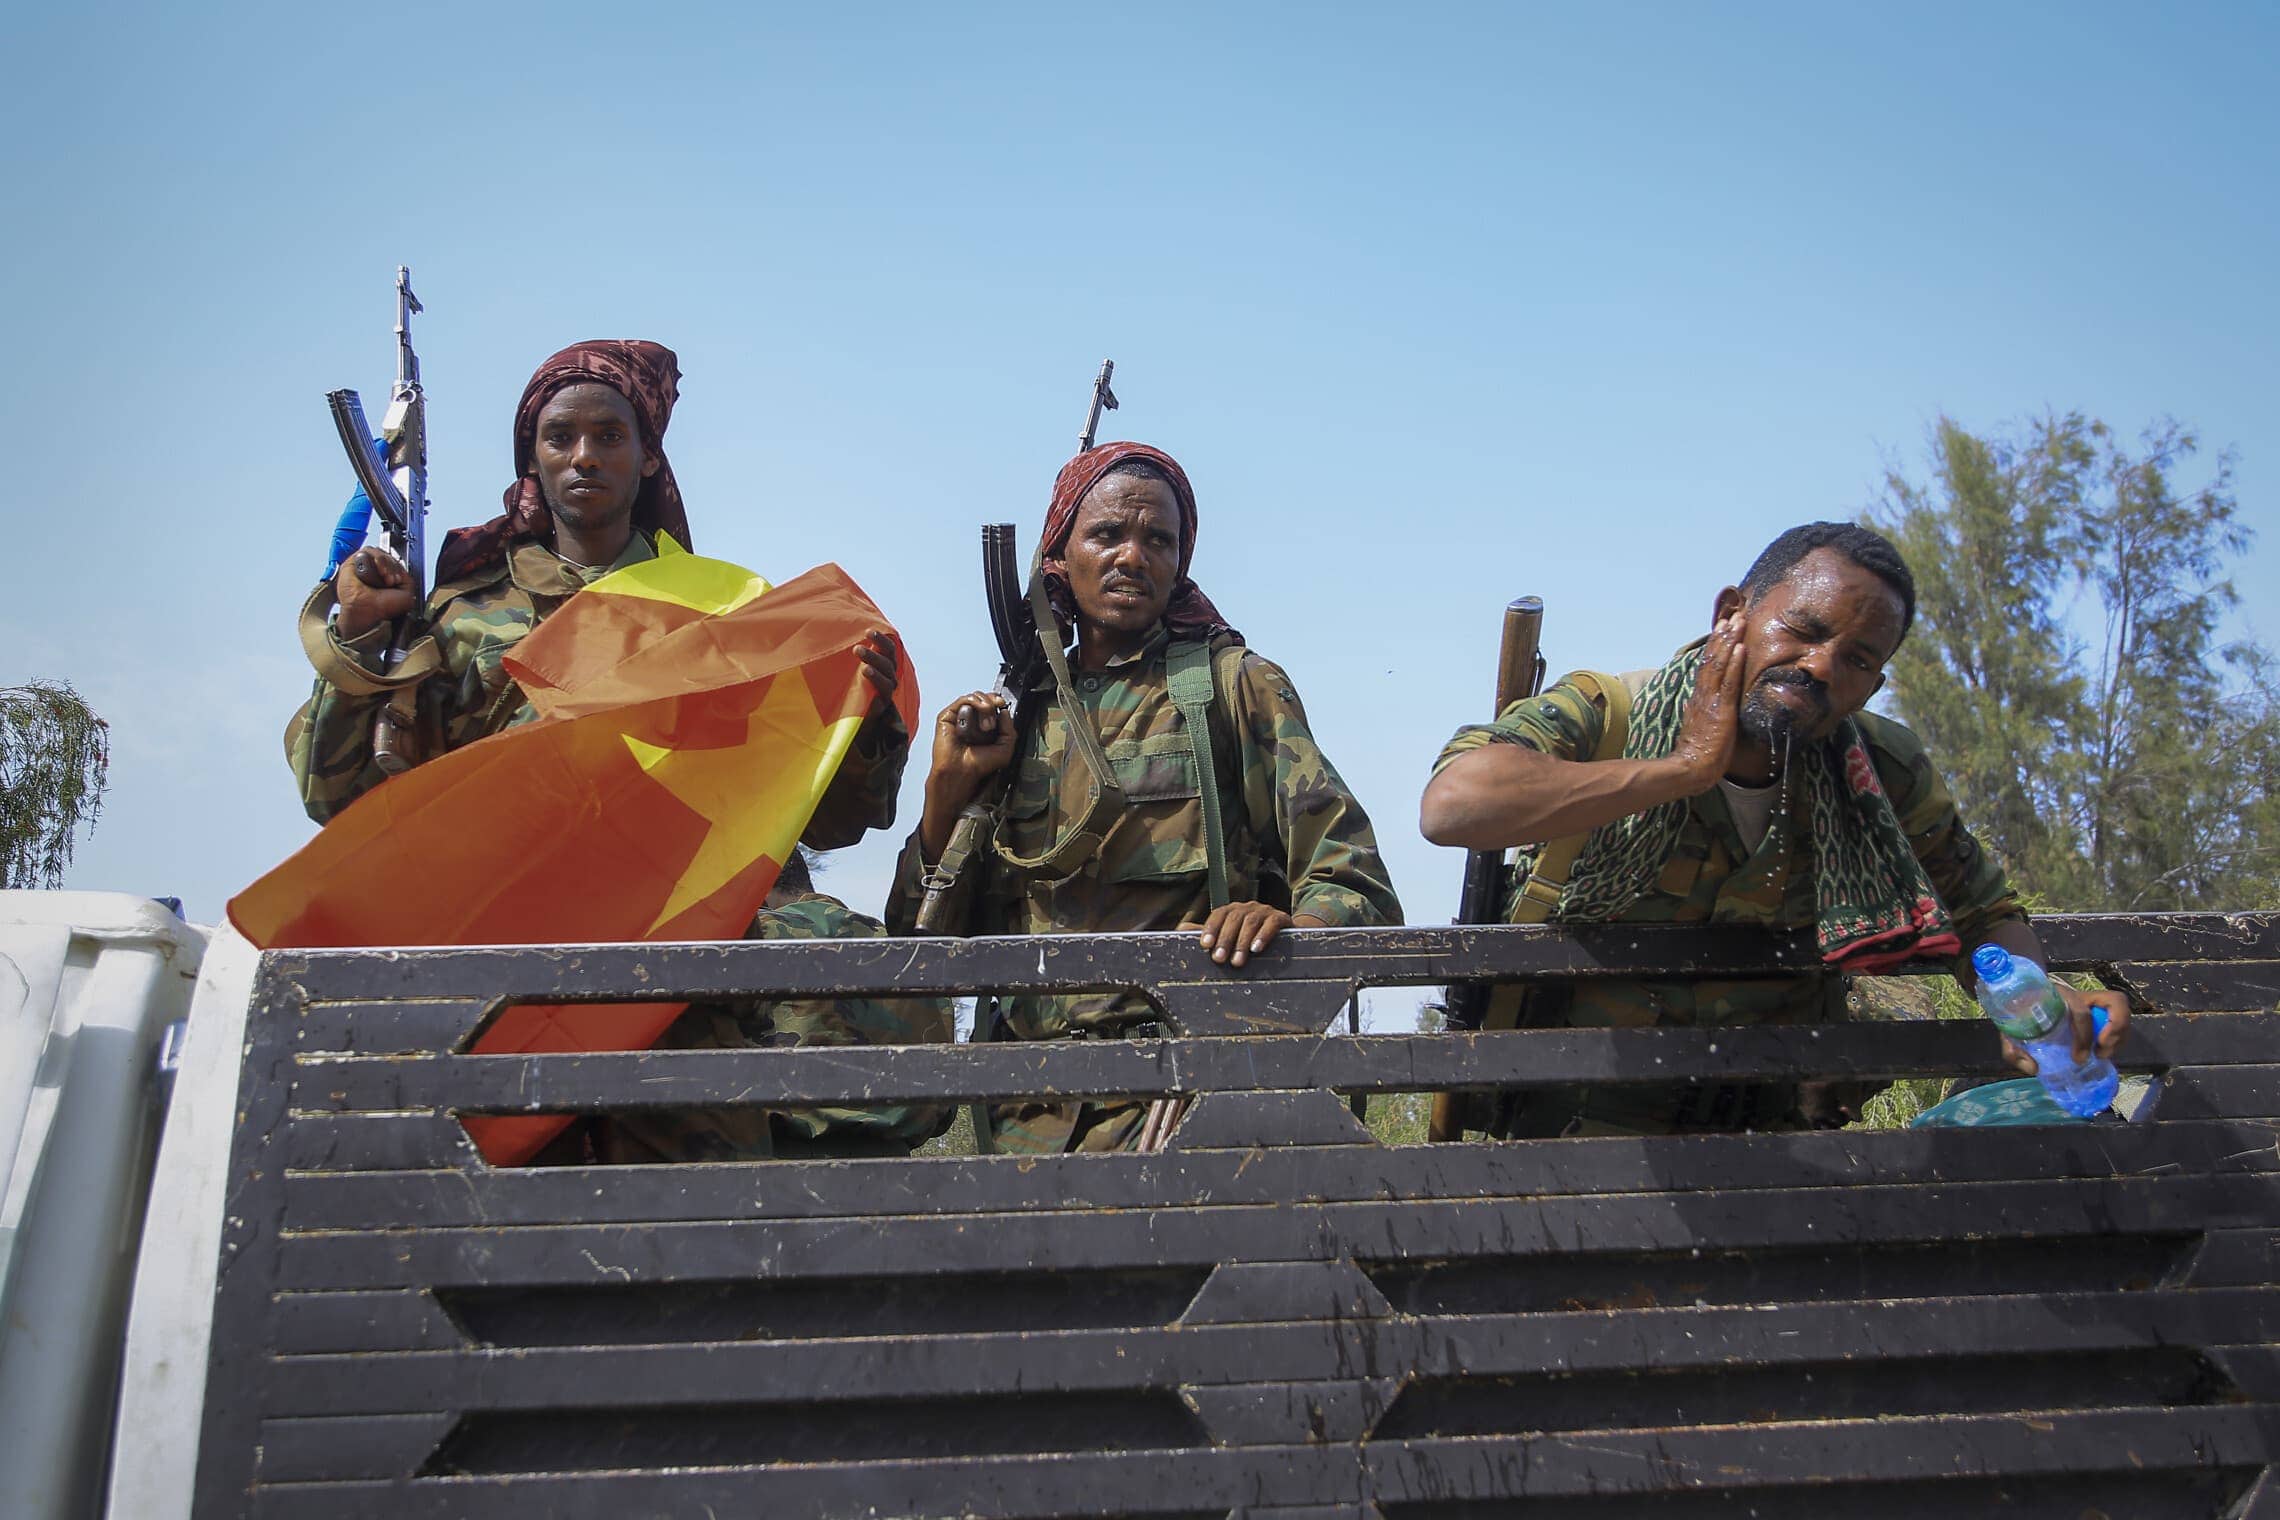 חיילים טיגריים במשאית באזור הקרבות בצפון אתיופיה, יוני 2021 (צילום: AP Photo/Alex Brandon)